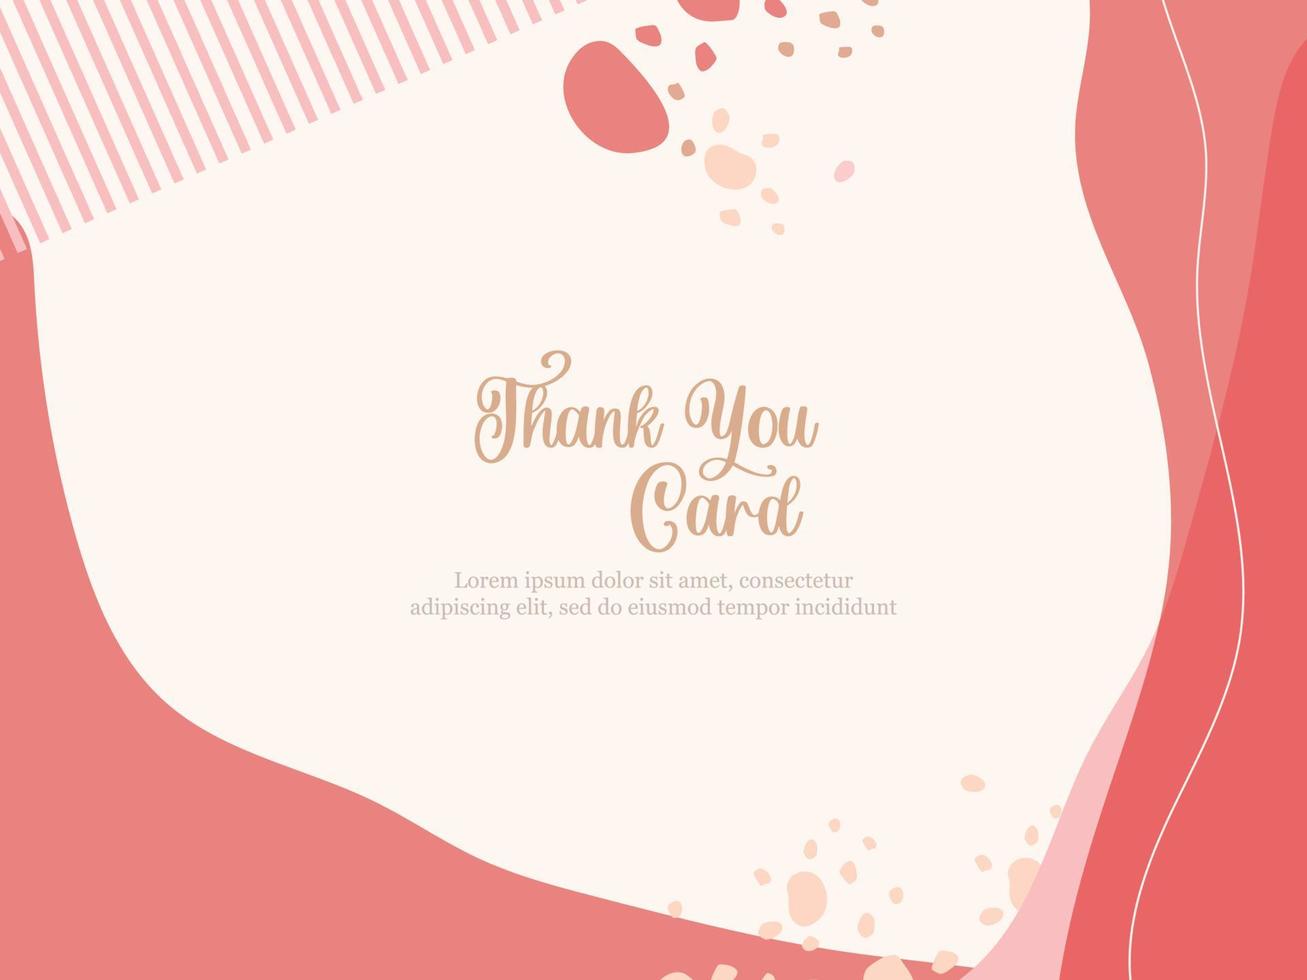 Thankyou card memphis style template design vector